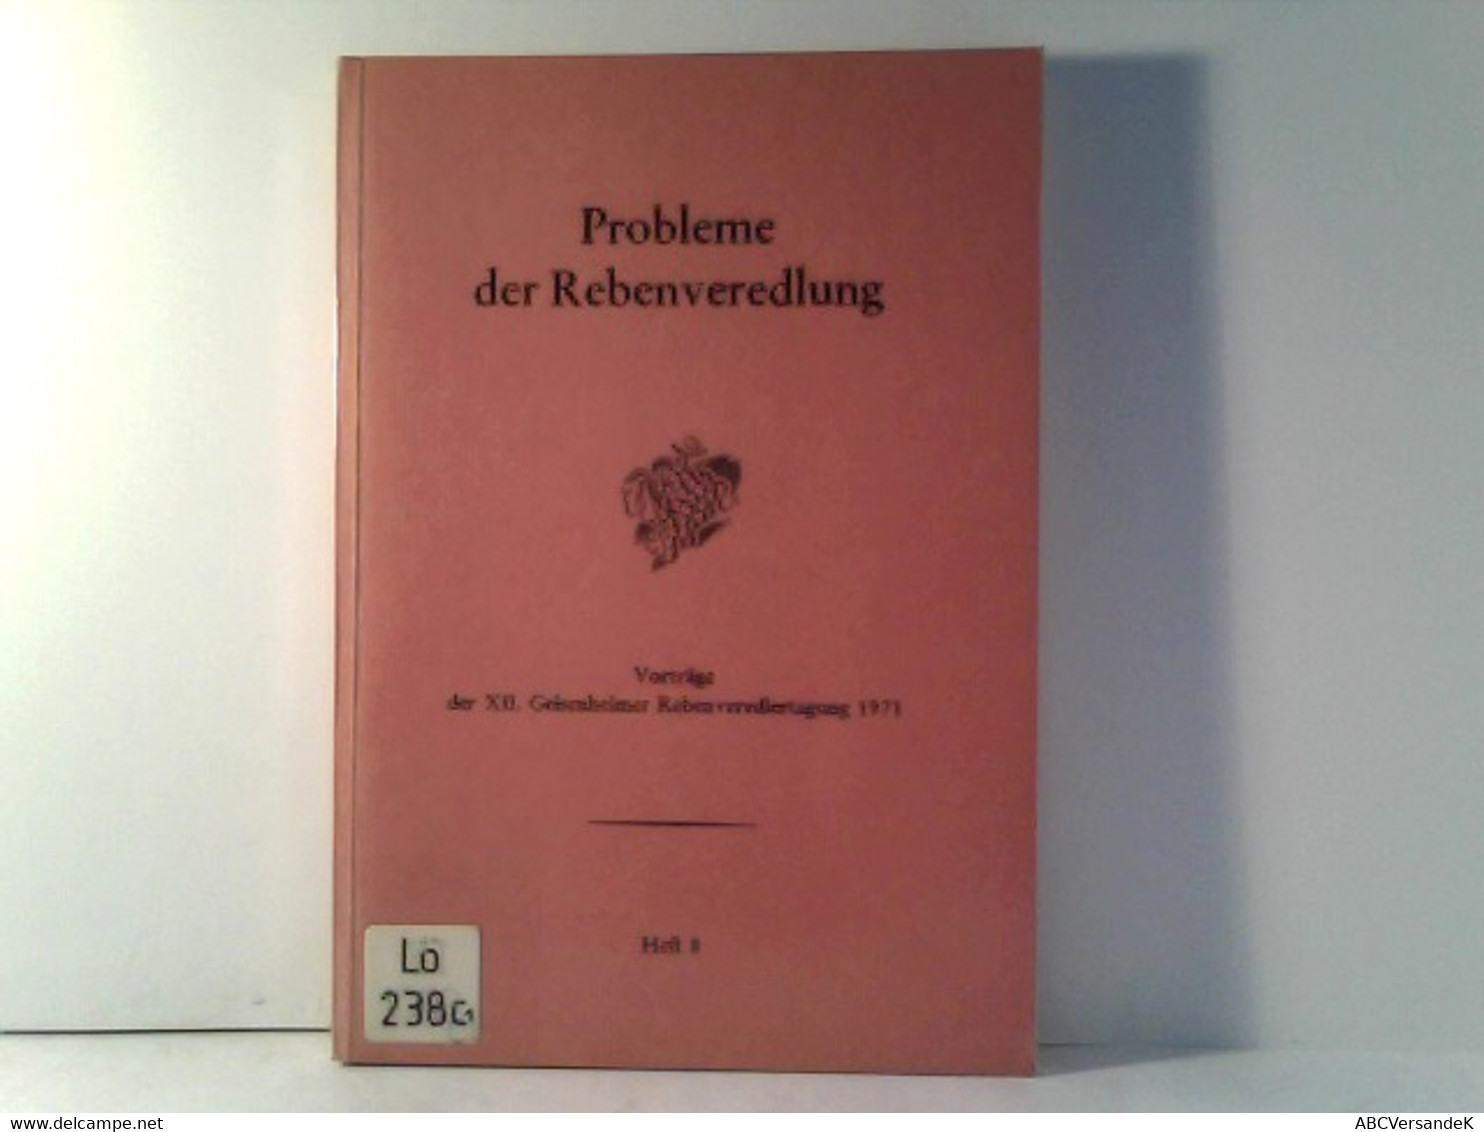 Probleme Der Rebenveredlung - Heft 8 - Vorträge Der XII. Geisenheimer Rebenveredlertagung 1971 - Natuur